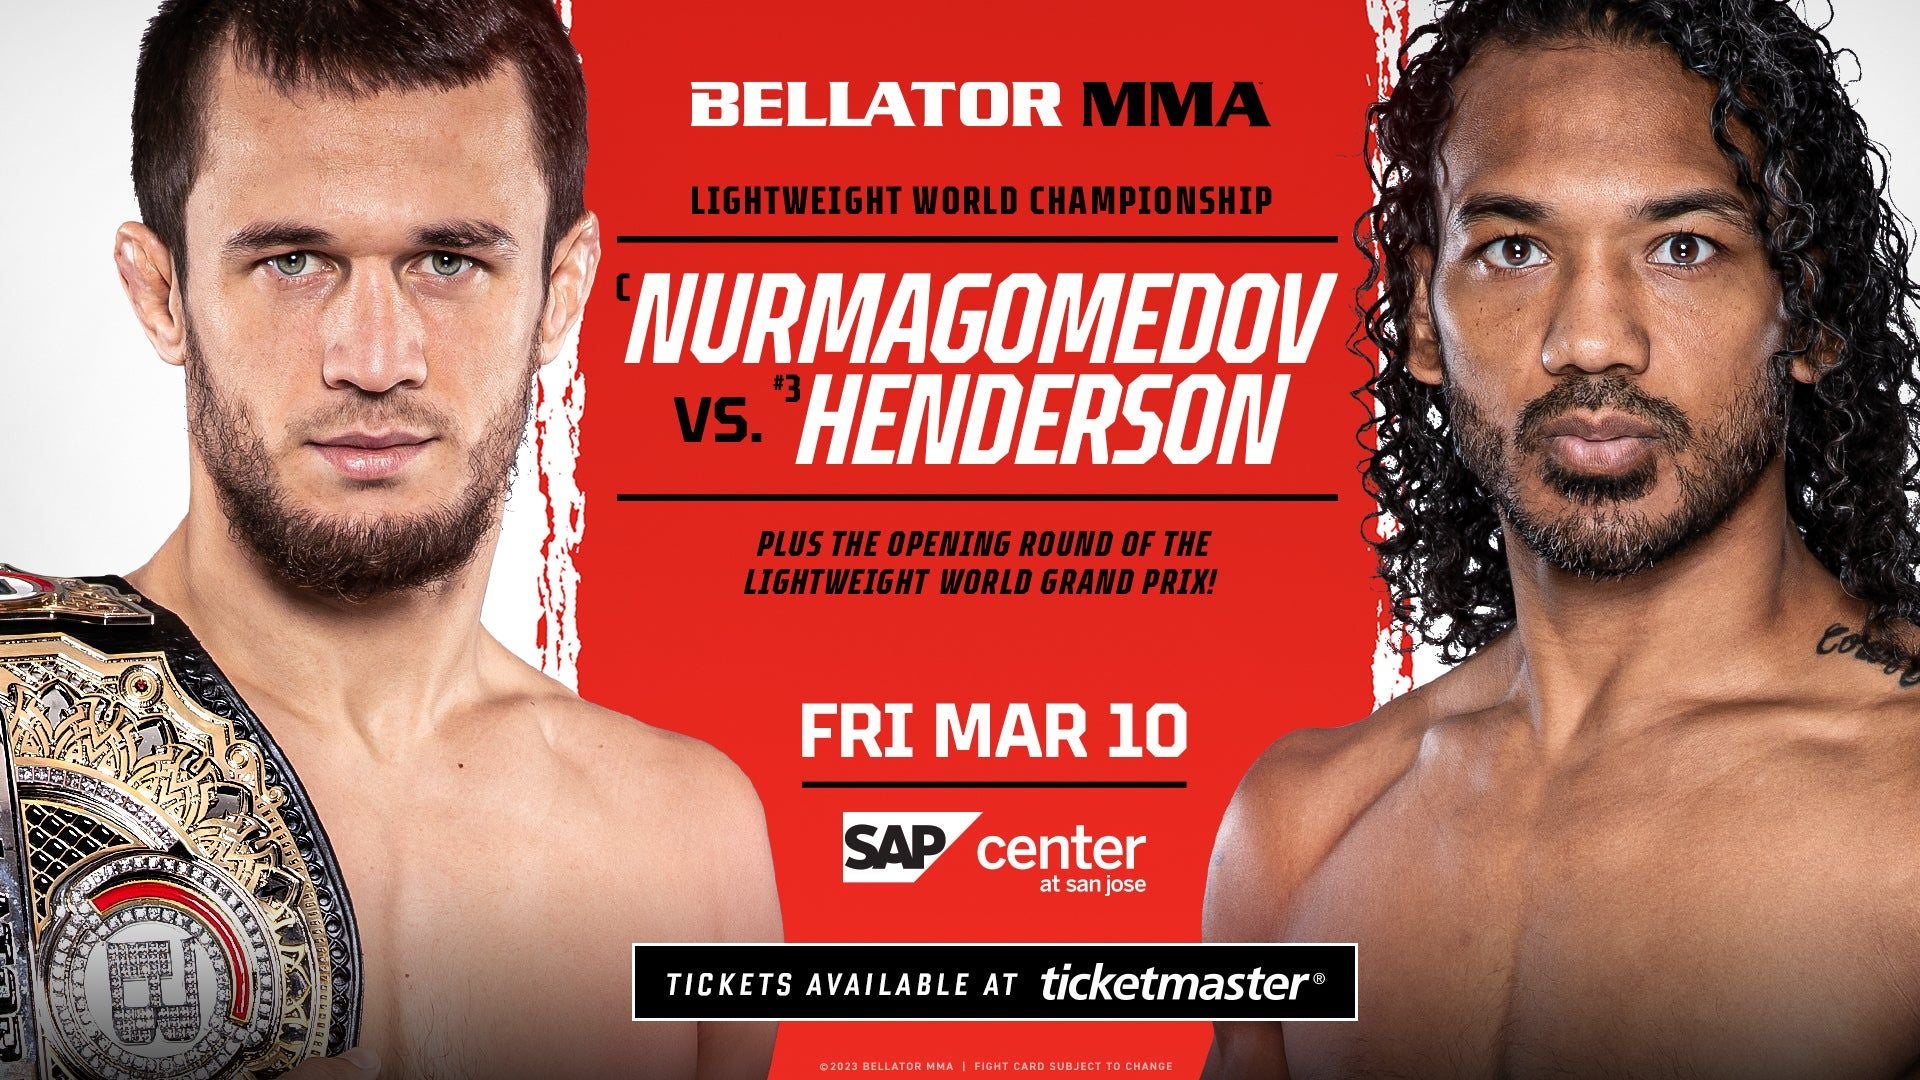 Bellator MMA -- Nurmagomedov vs Henderson